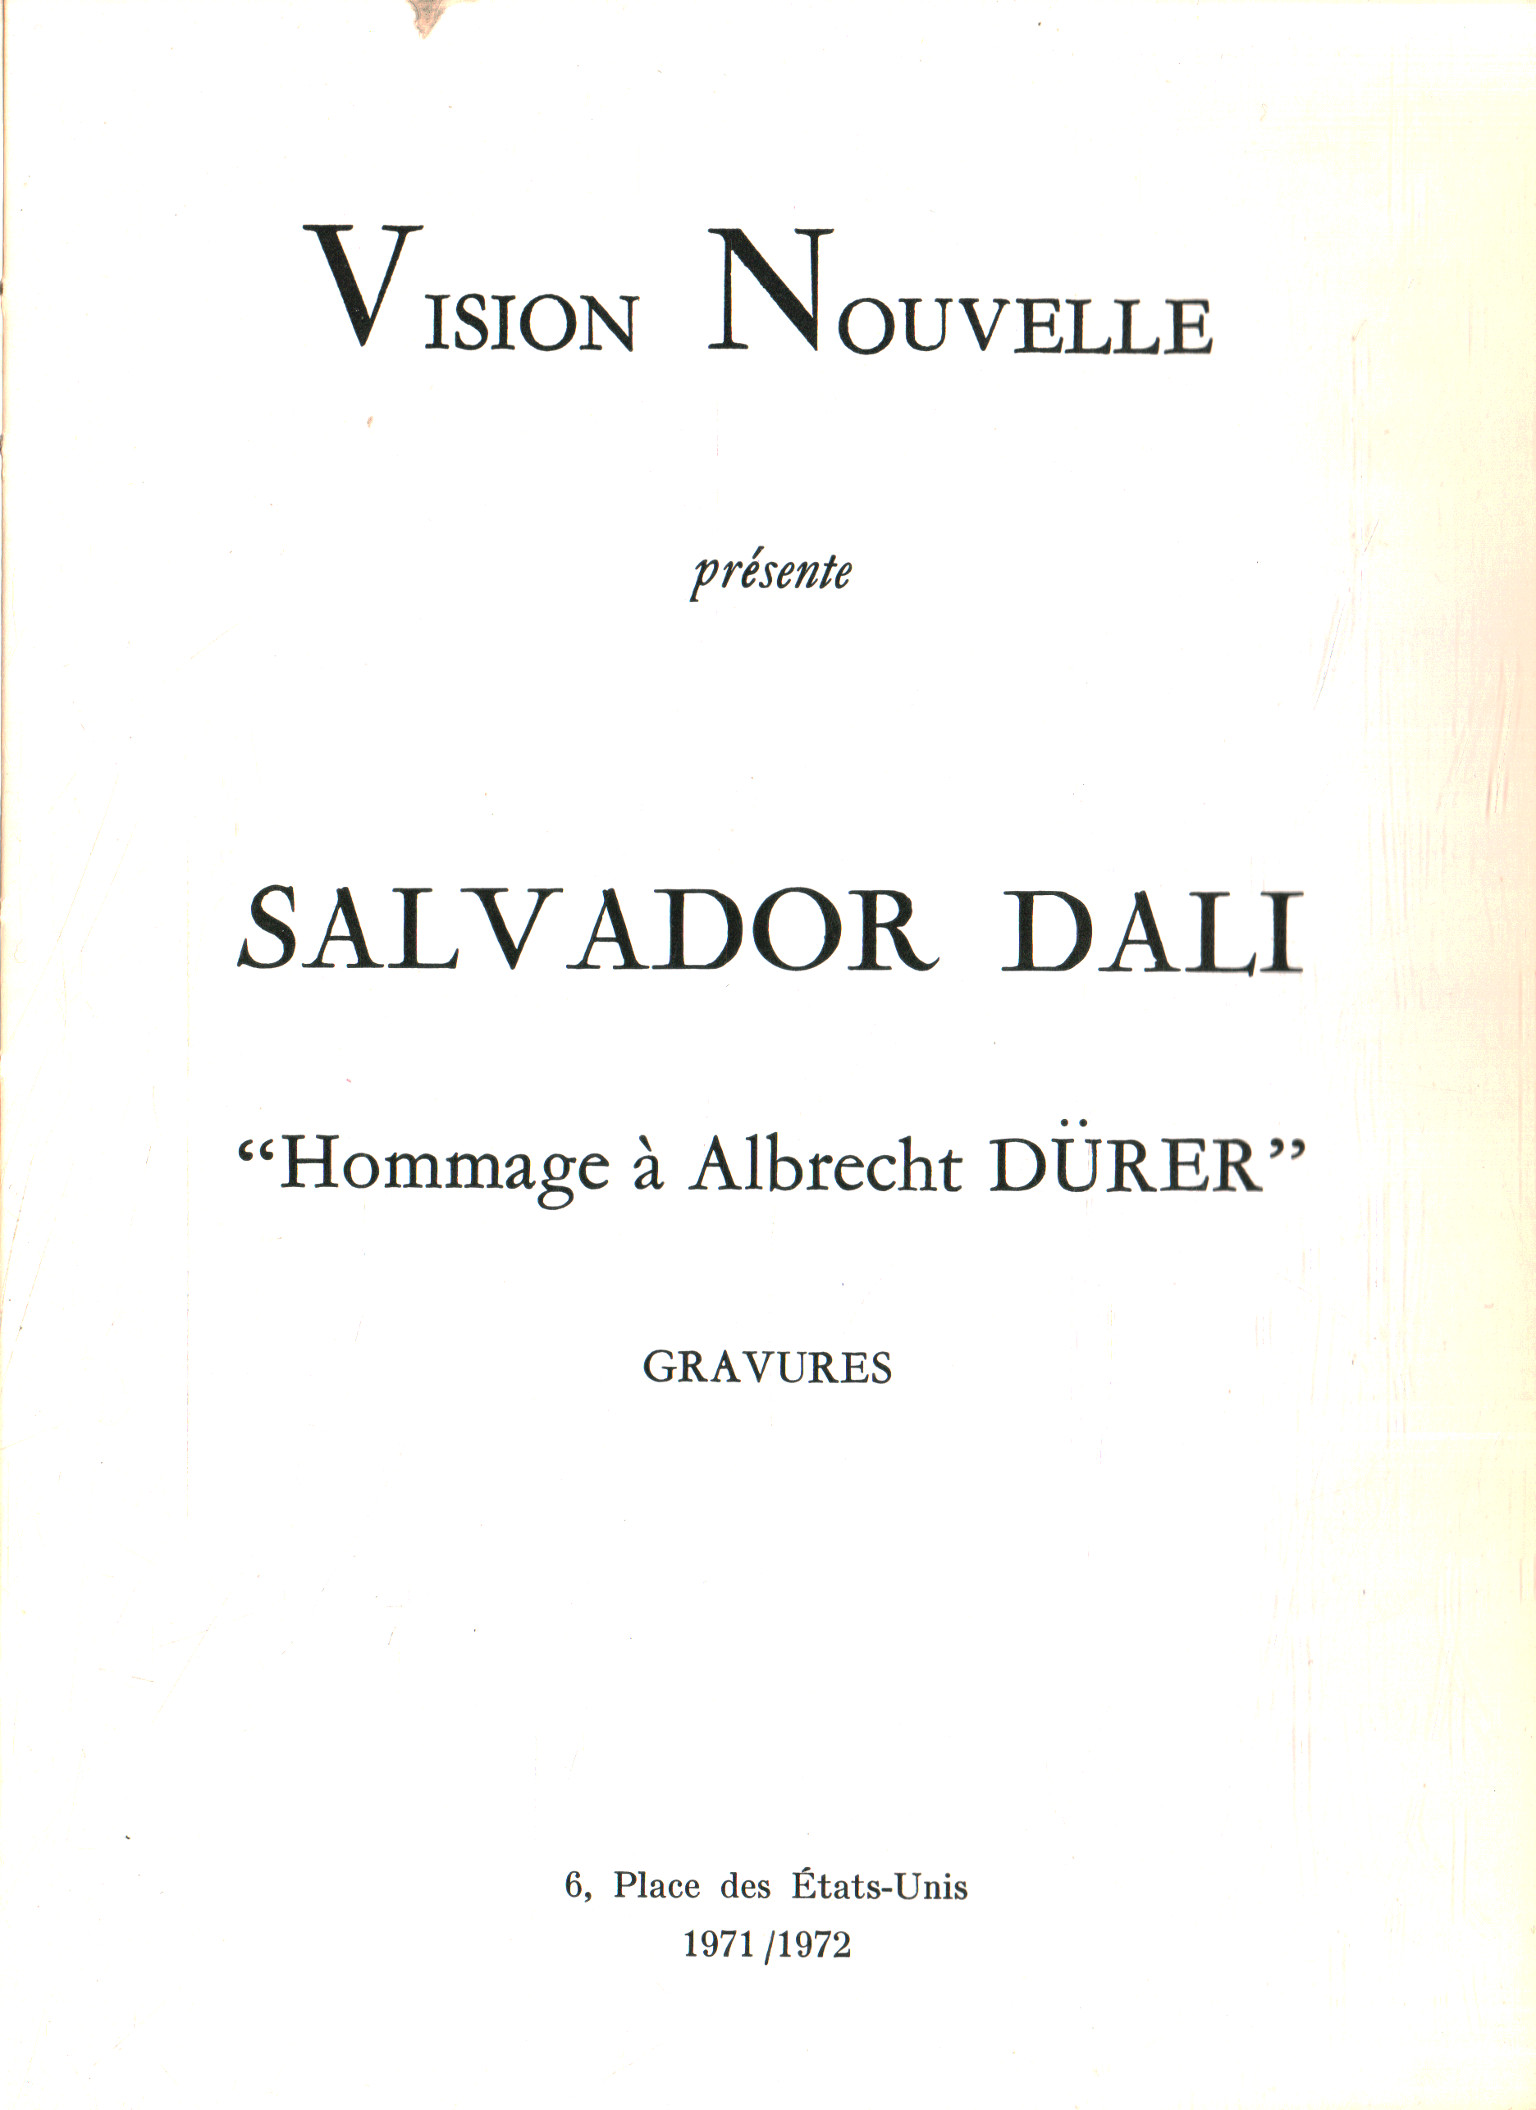 Salvador Dalì. Hommage à Albrech